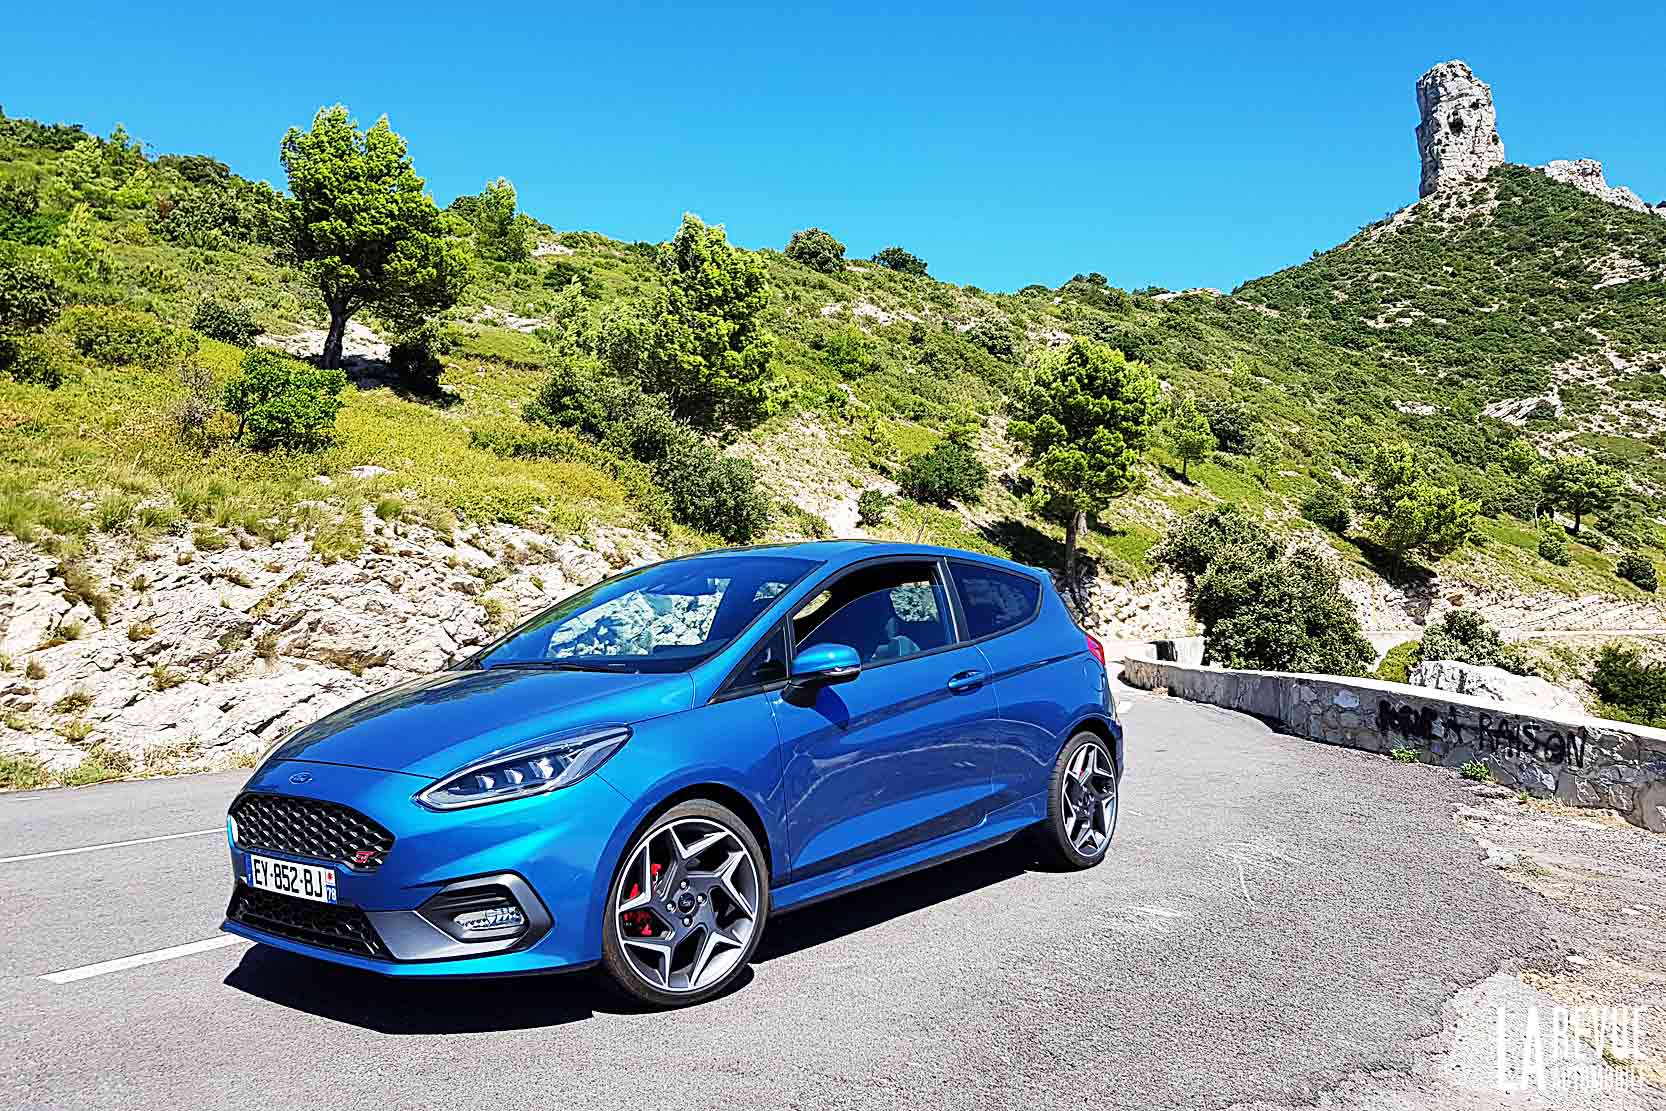 Image principale de l'actu: Essai Ford Fiesta ST : le mistral gagnant